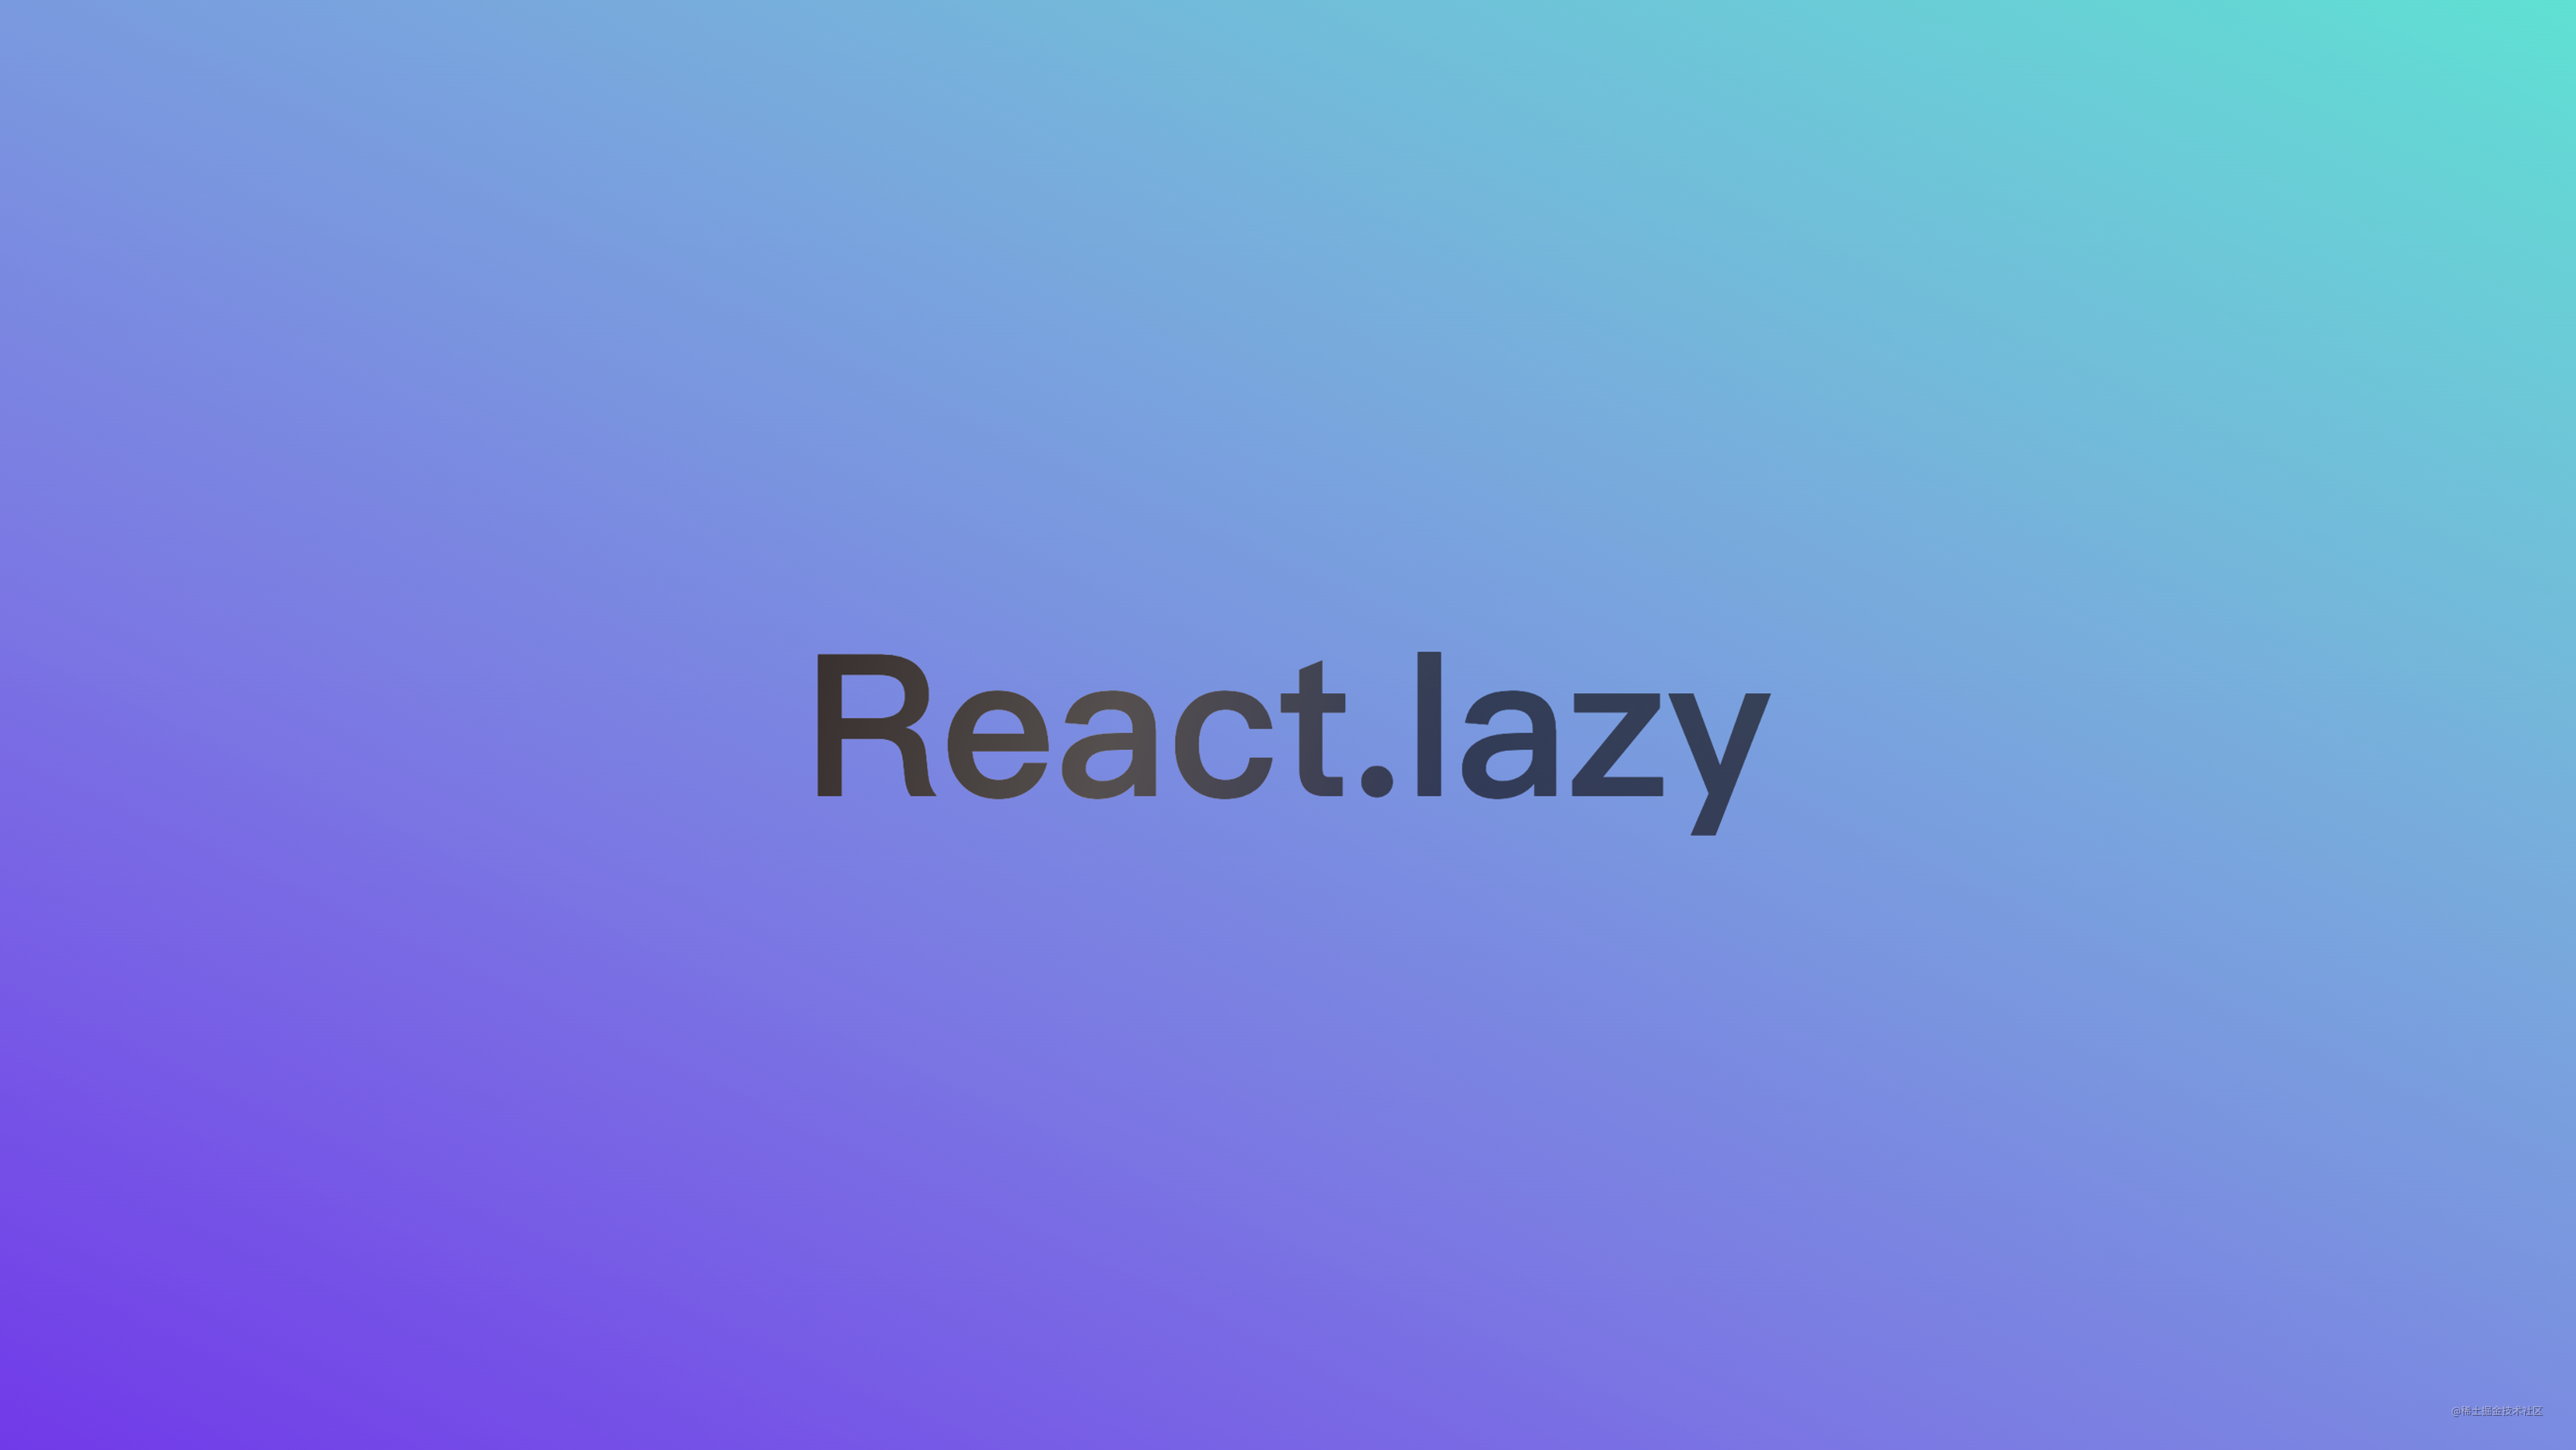 使用 React.lazy 优化页面初次渲染